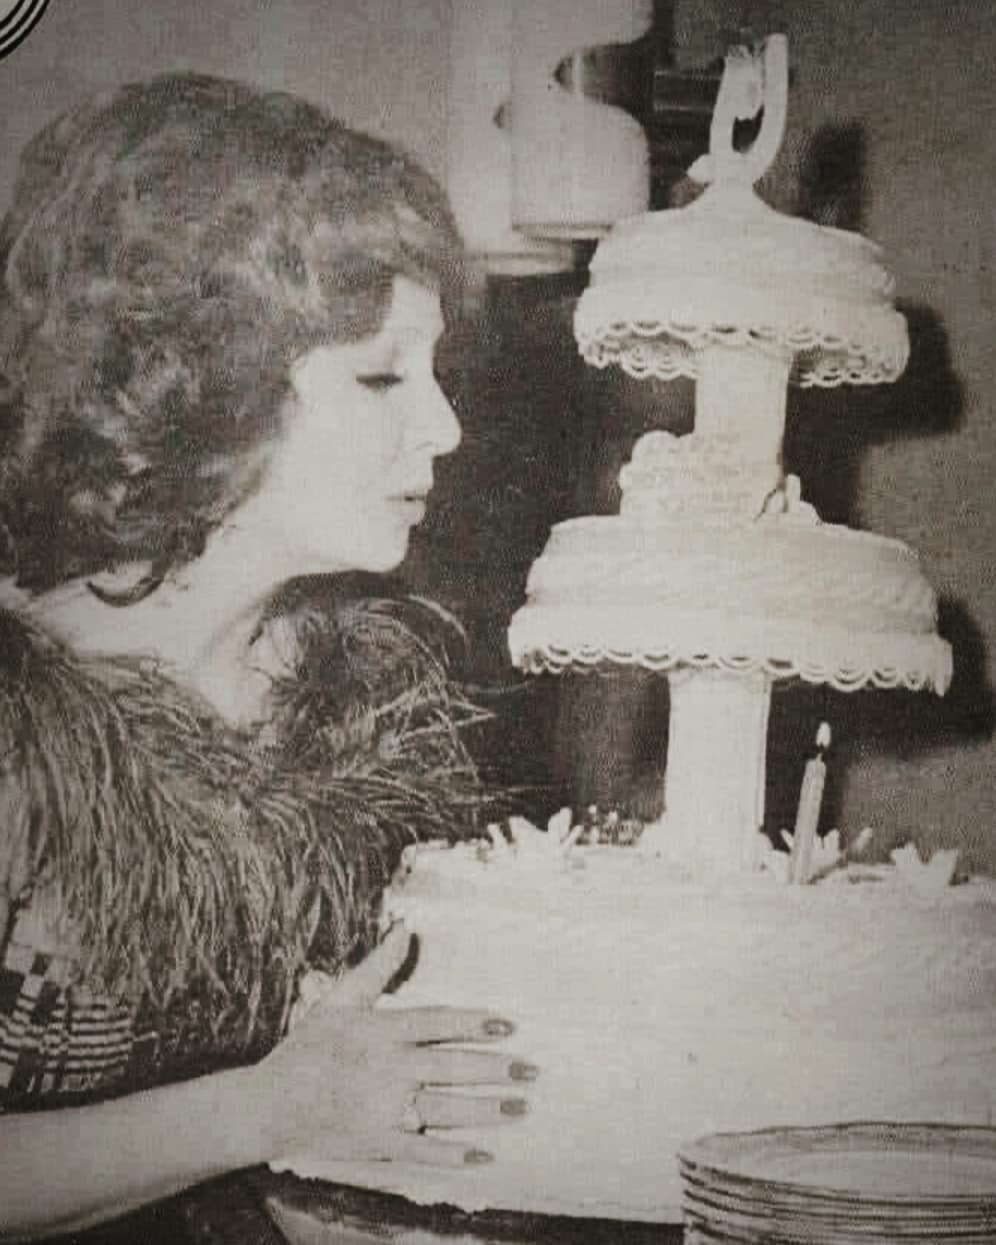 النجمة الراحلة شادية تحتفل بعيد ميلادها